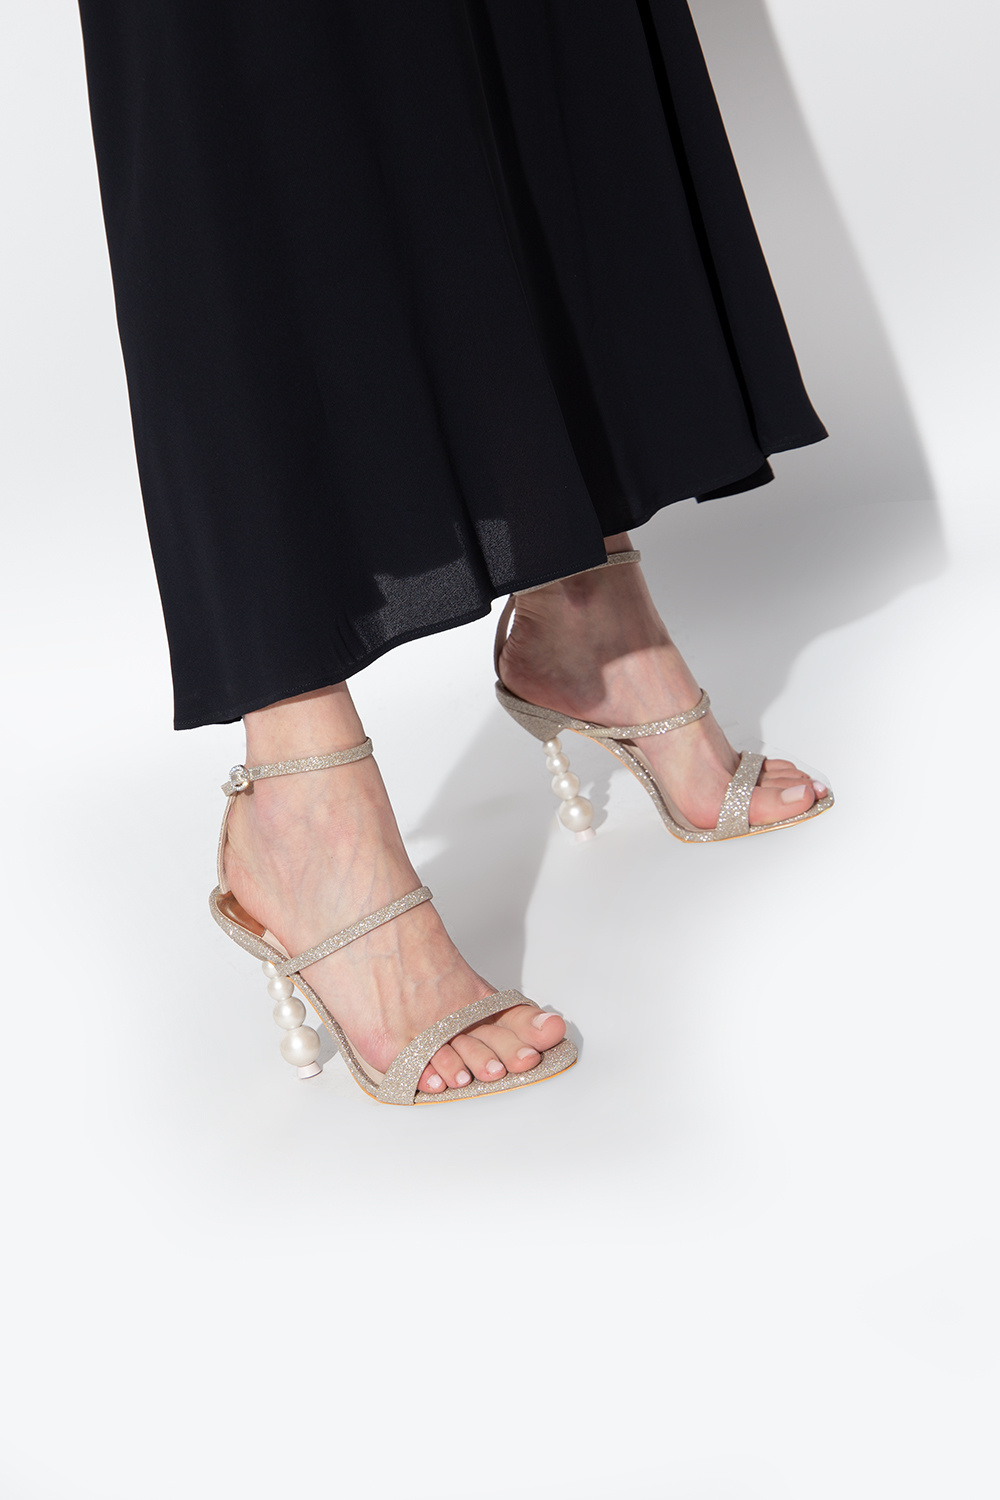 Sophia Webster ‘Rosalind’ heeled got sandals